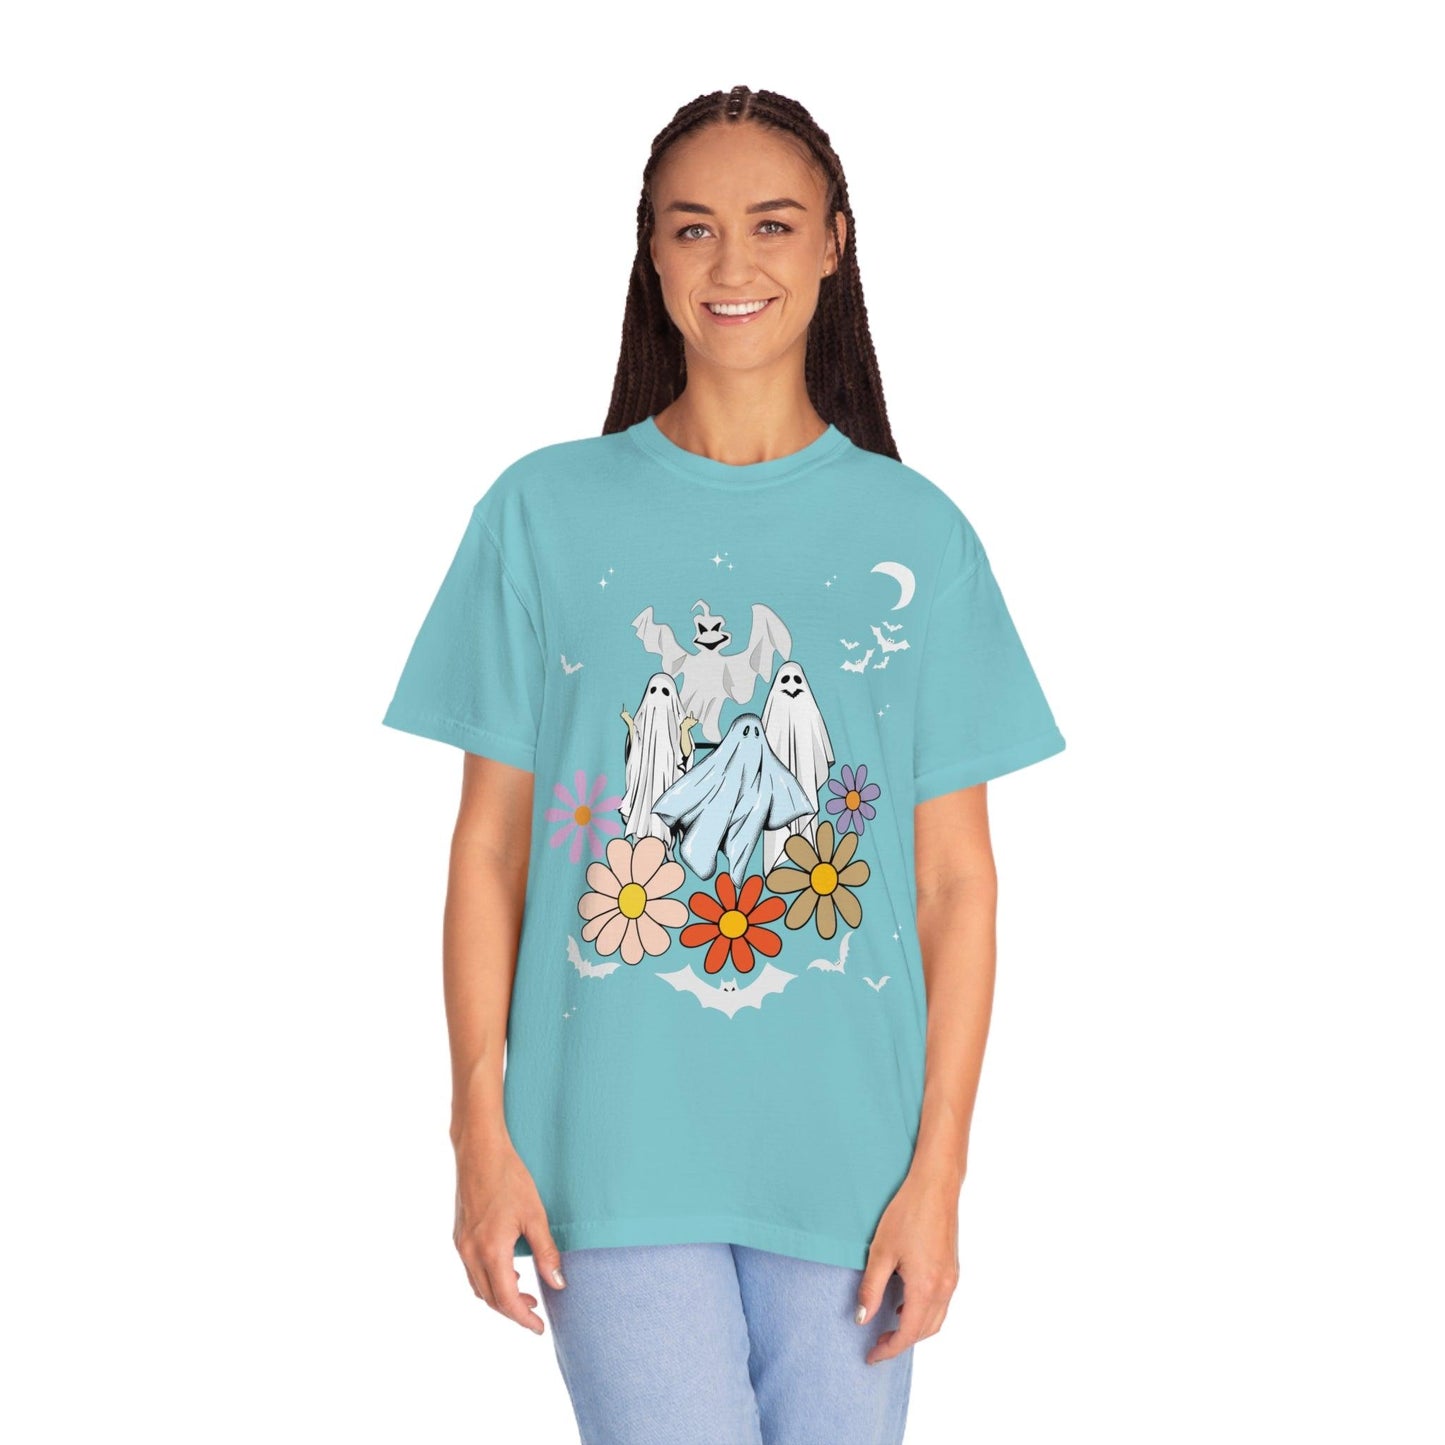 Retro Halloween Tshirt, Trick or Treat shirt, Vintage Shirt Halloween Shirt, floral Ghost Shirt